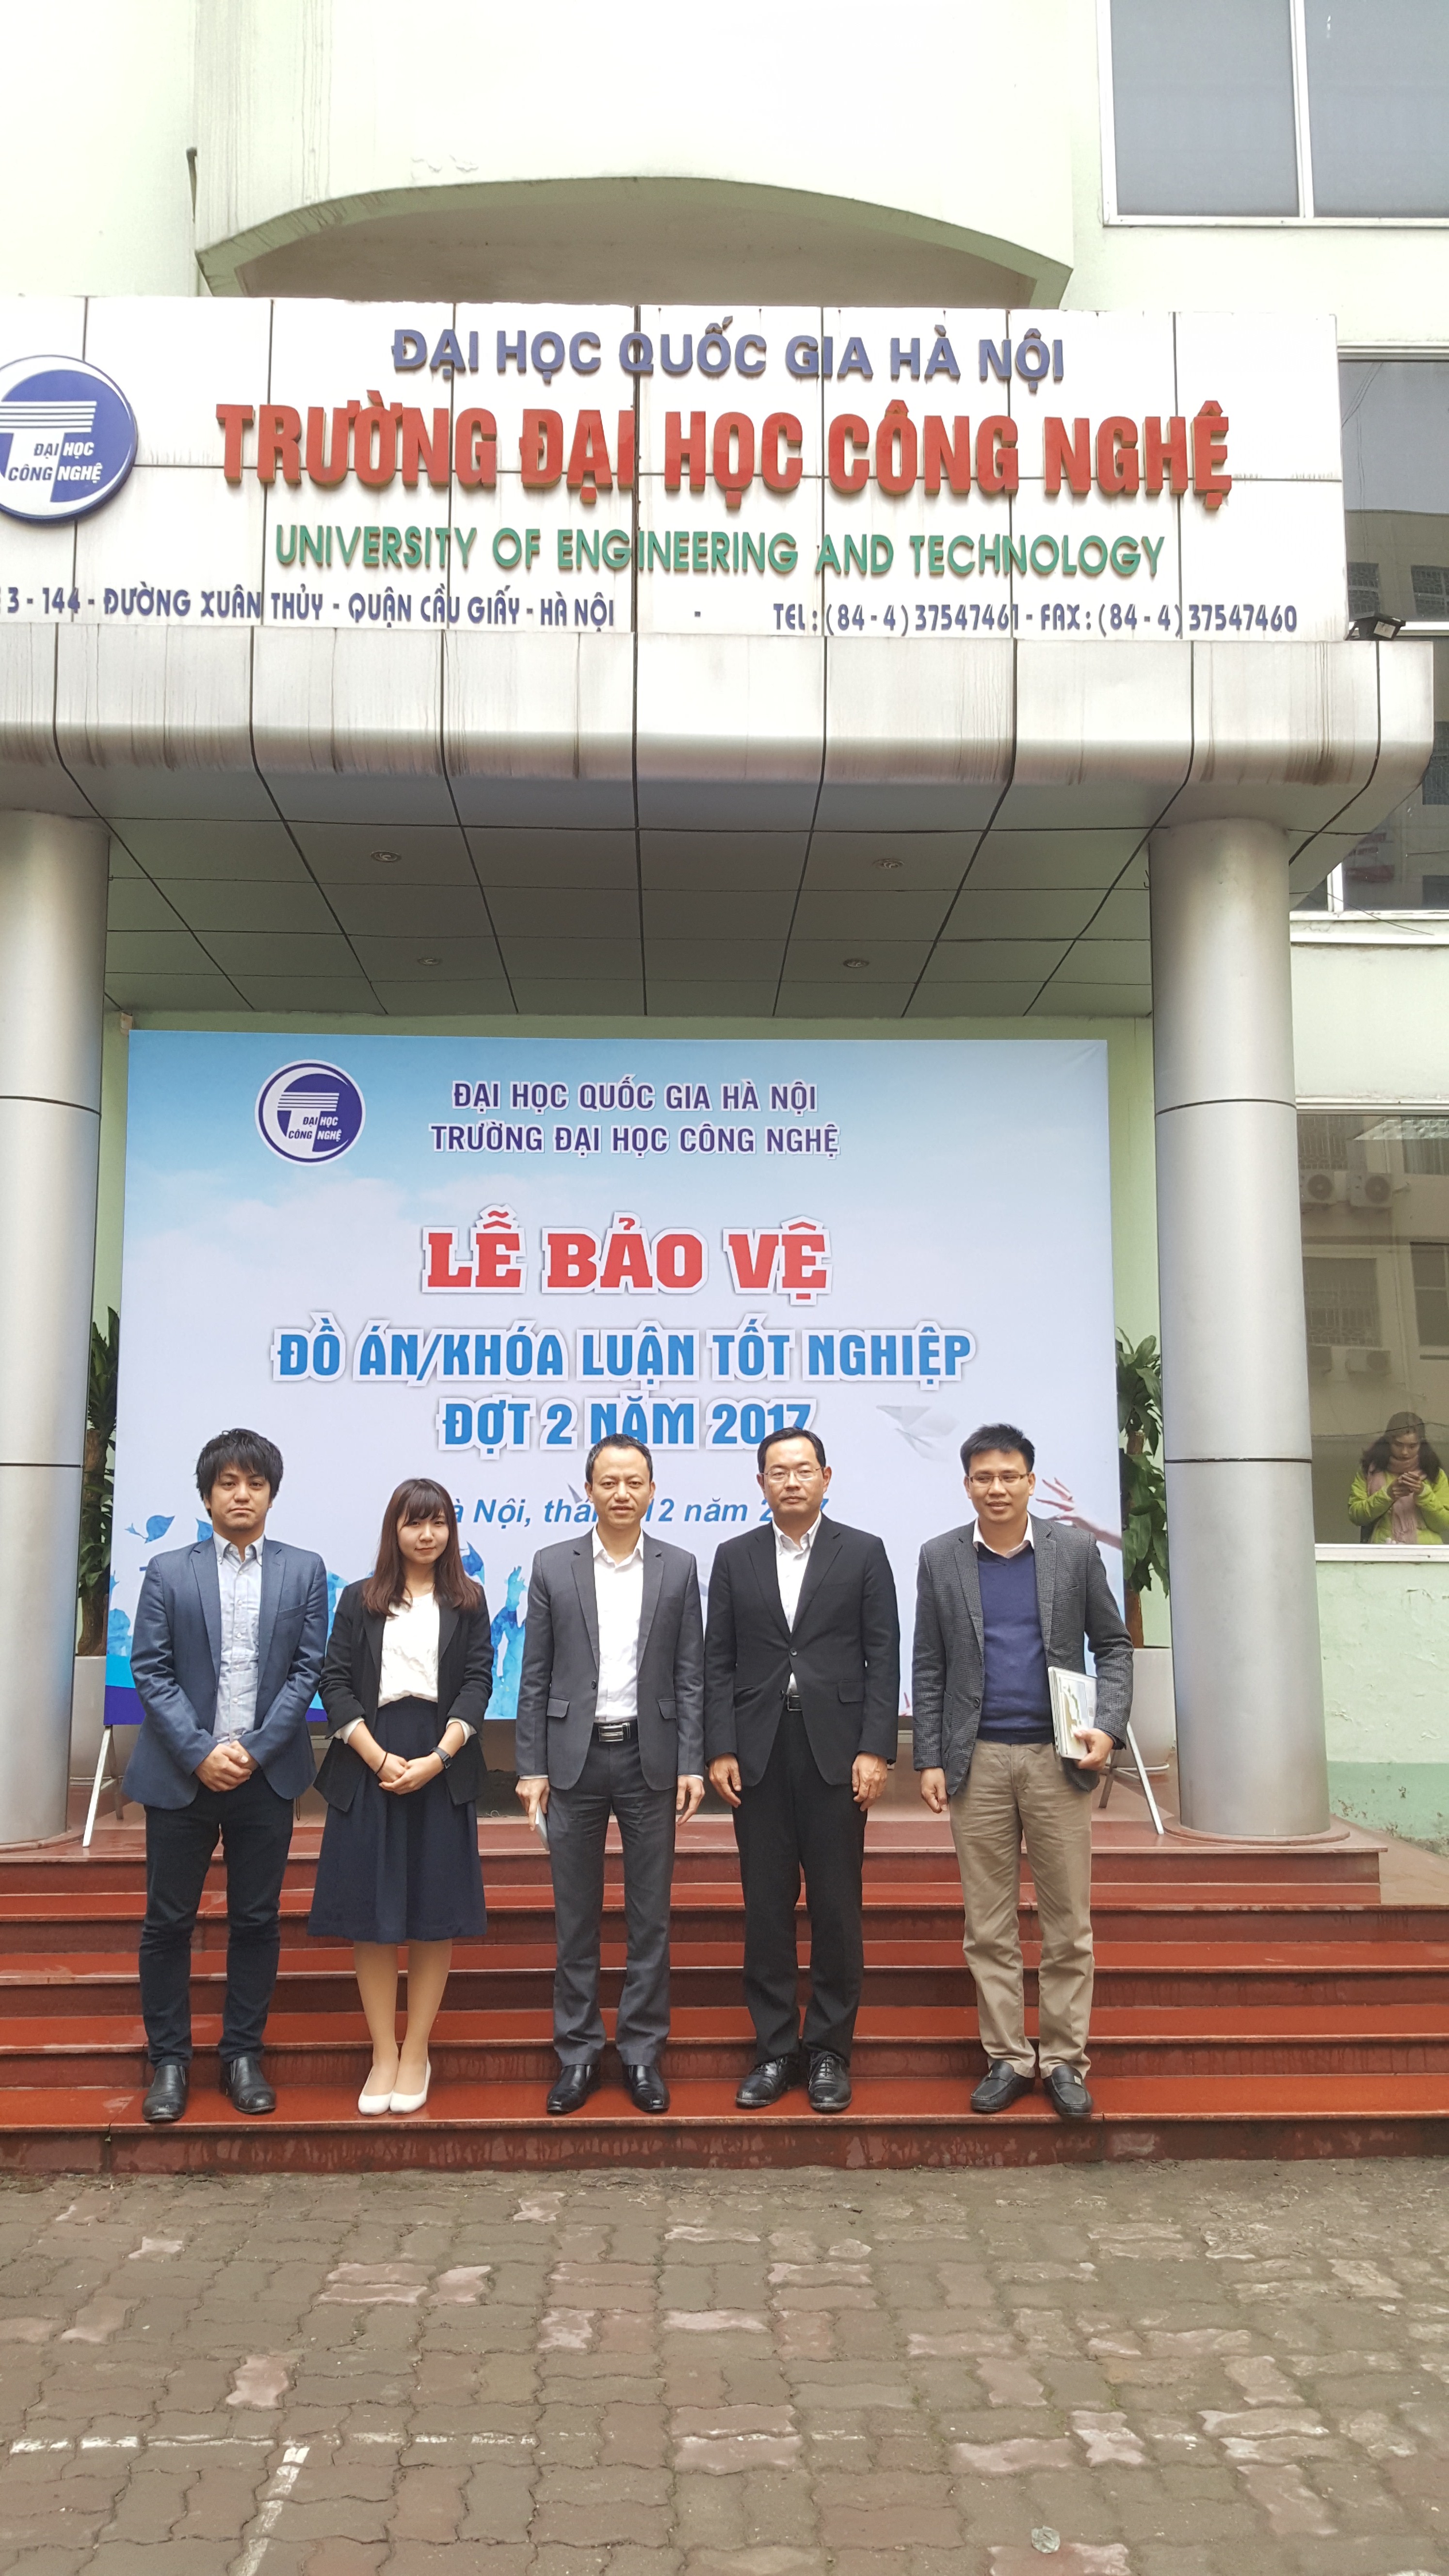 Chụp ảnh lưu niệm cùng lãnh đạo trường Đại học Công nghệ Đại học Quốc gia Hà Nội